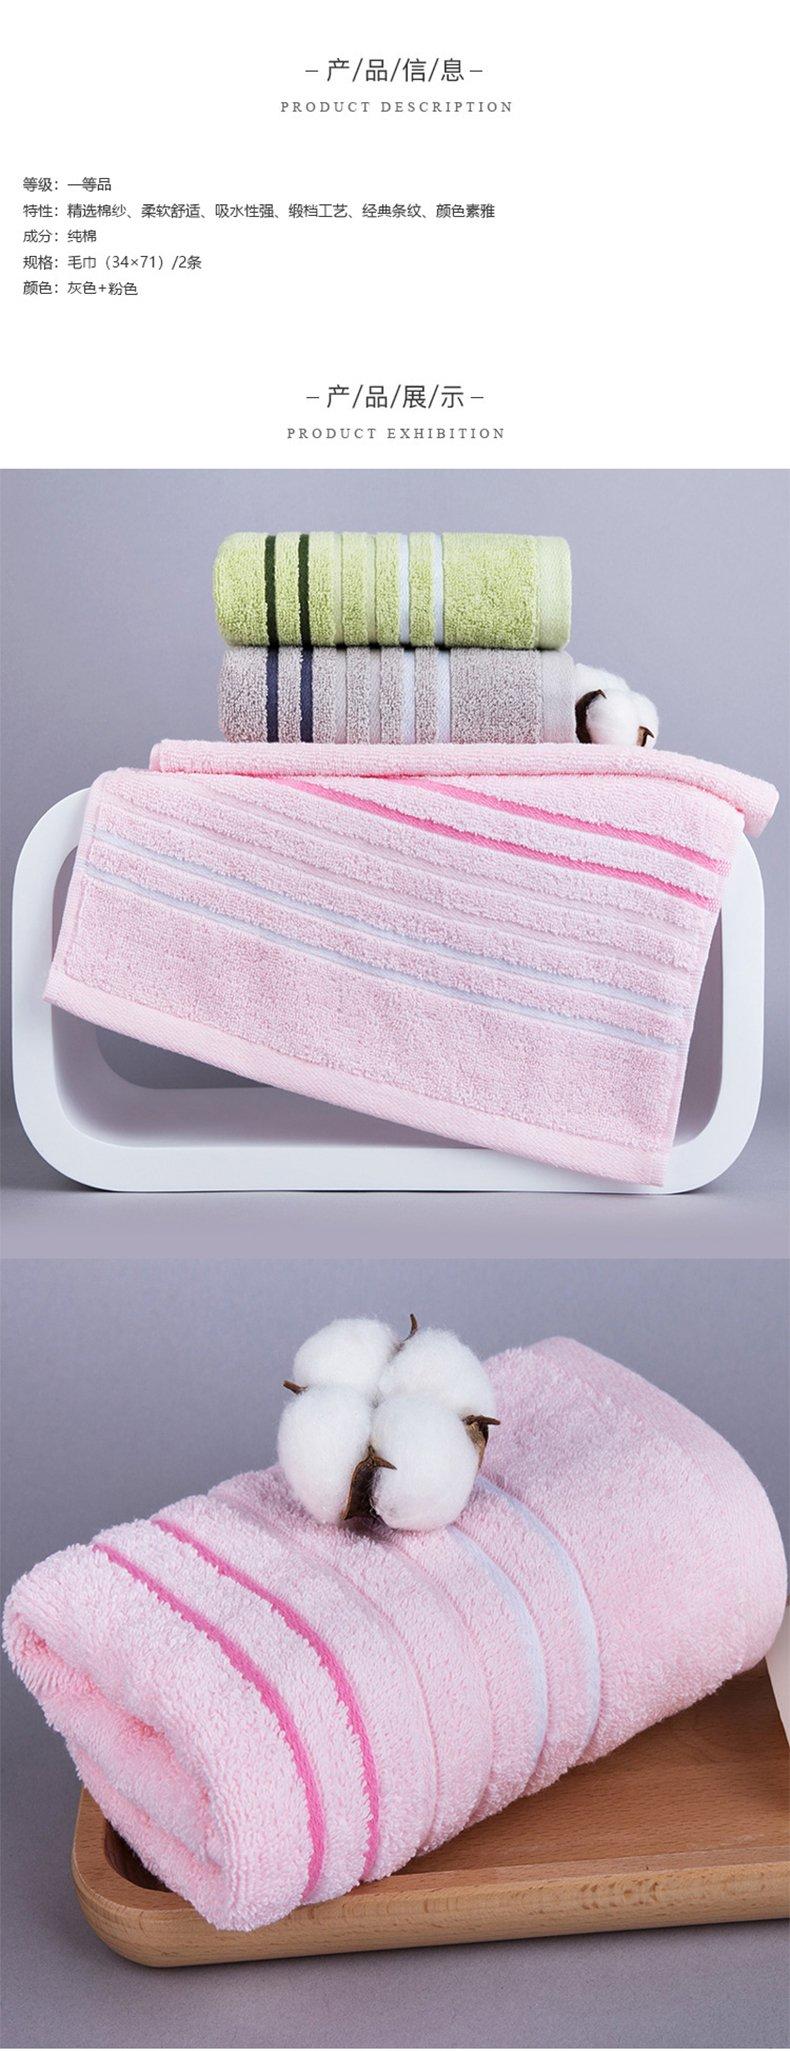 三利 纯棉经典缎档毛巾2条装柔软吸水洗脸巾 34×71cm 灰色+粉色